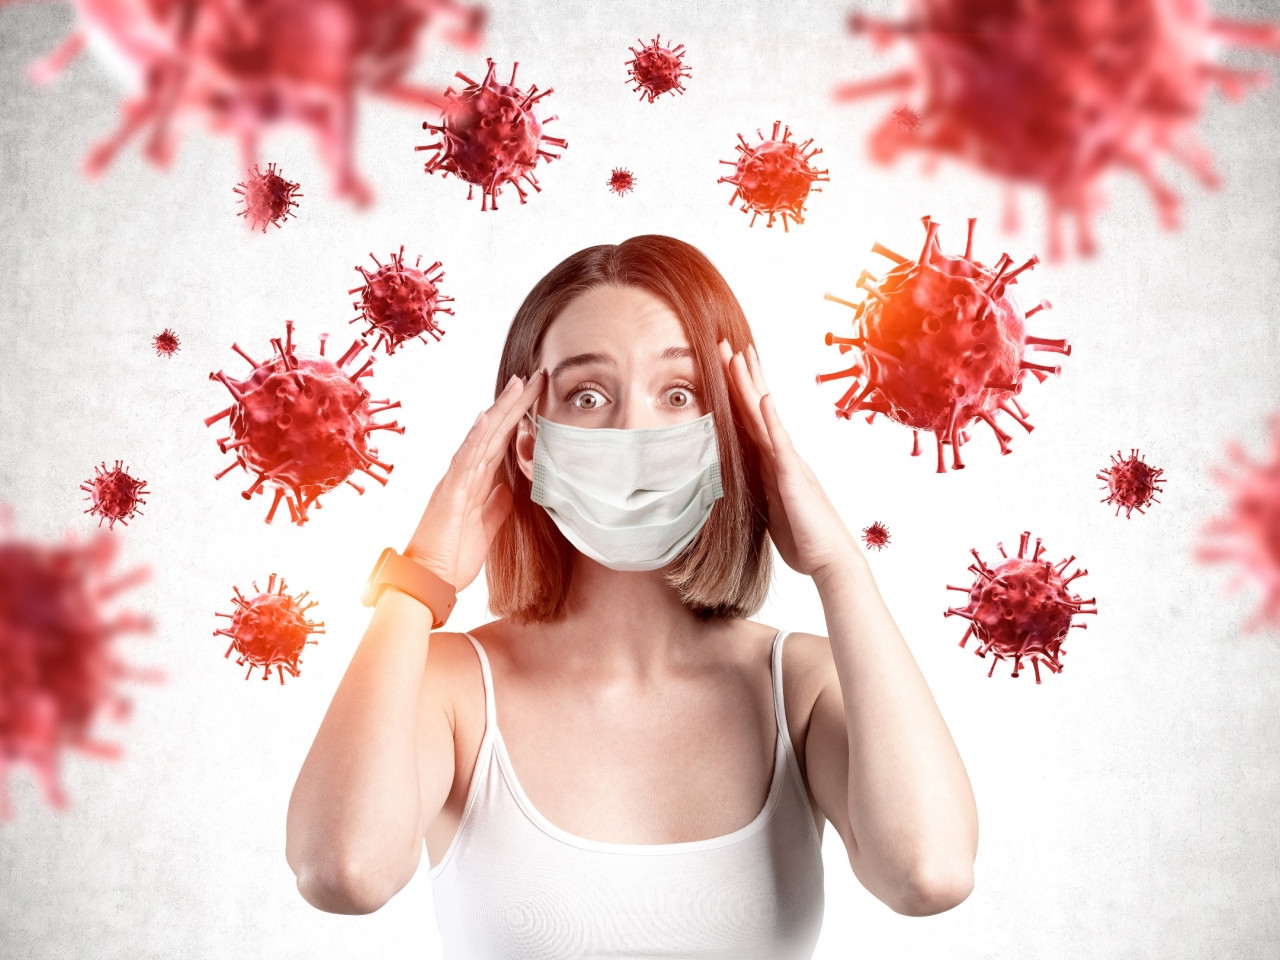 Gestire la paura ai tempi del coronavirus - Counselor Anna Sallustro